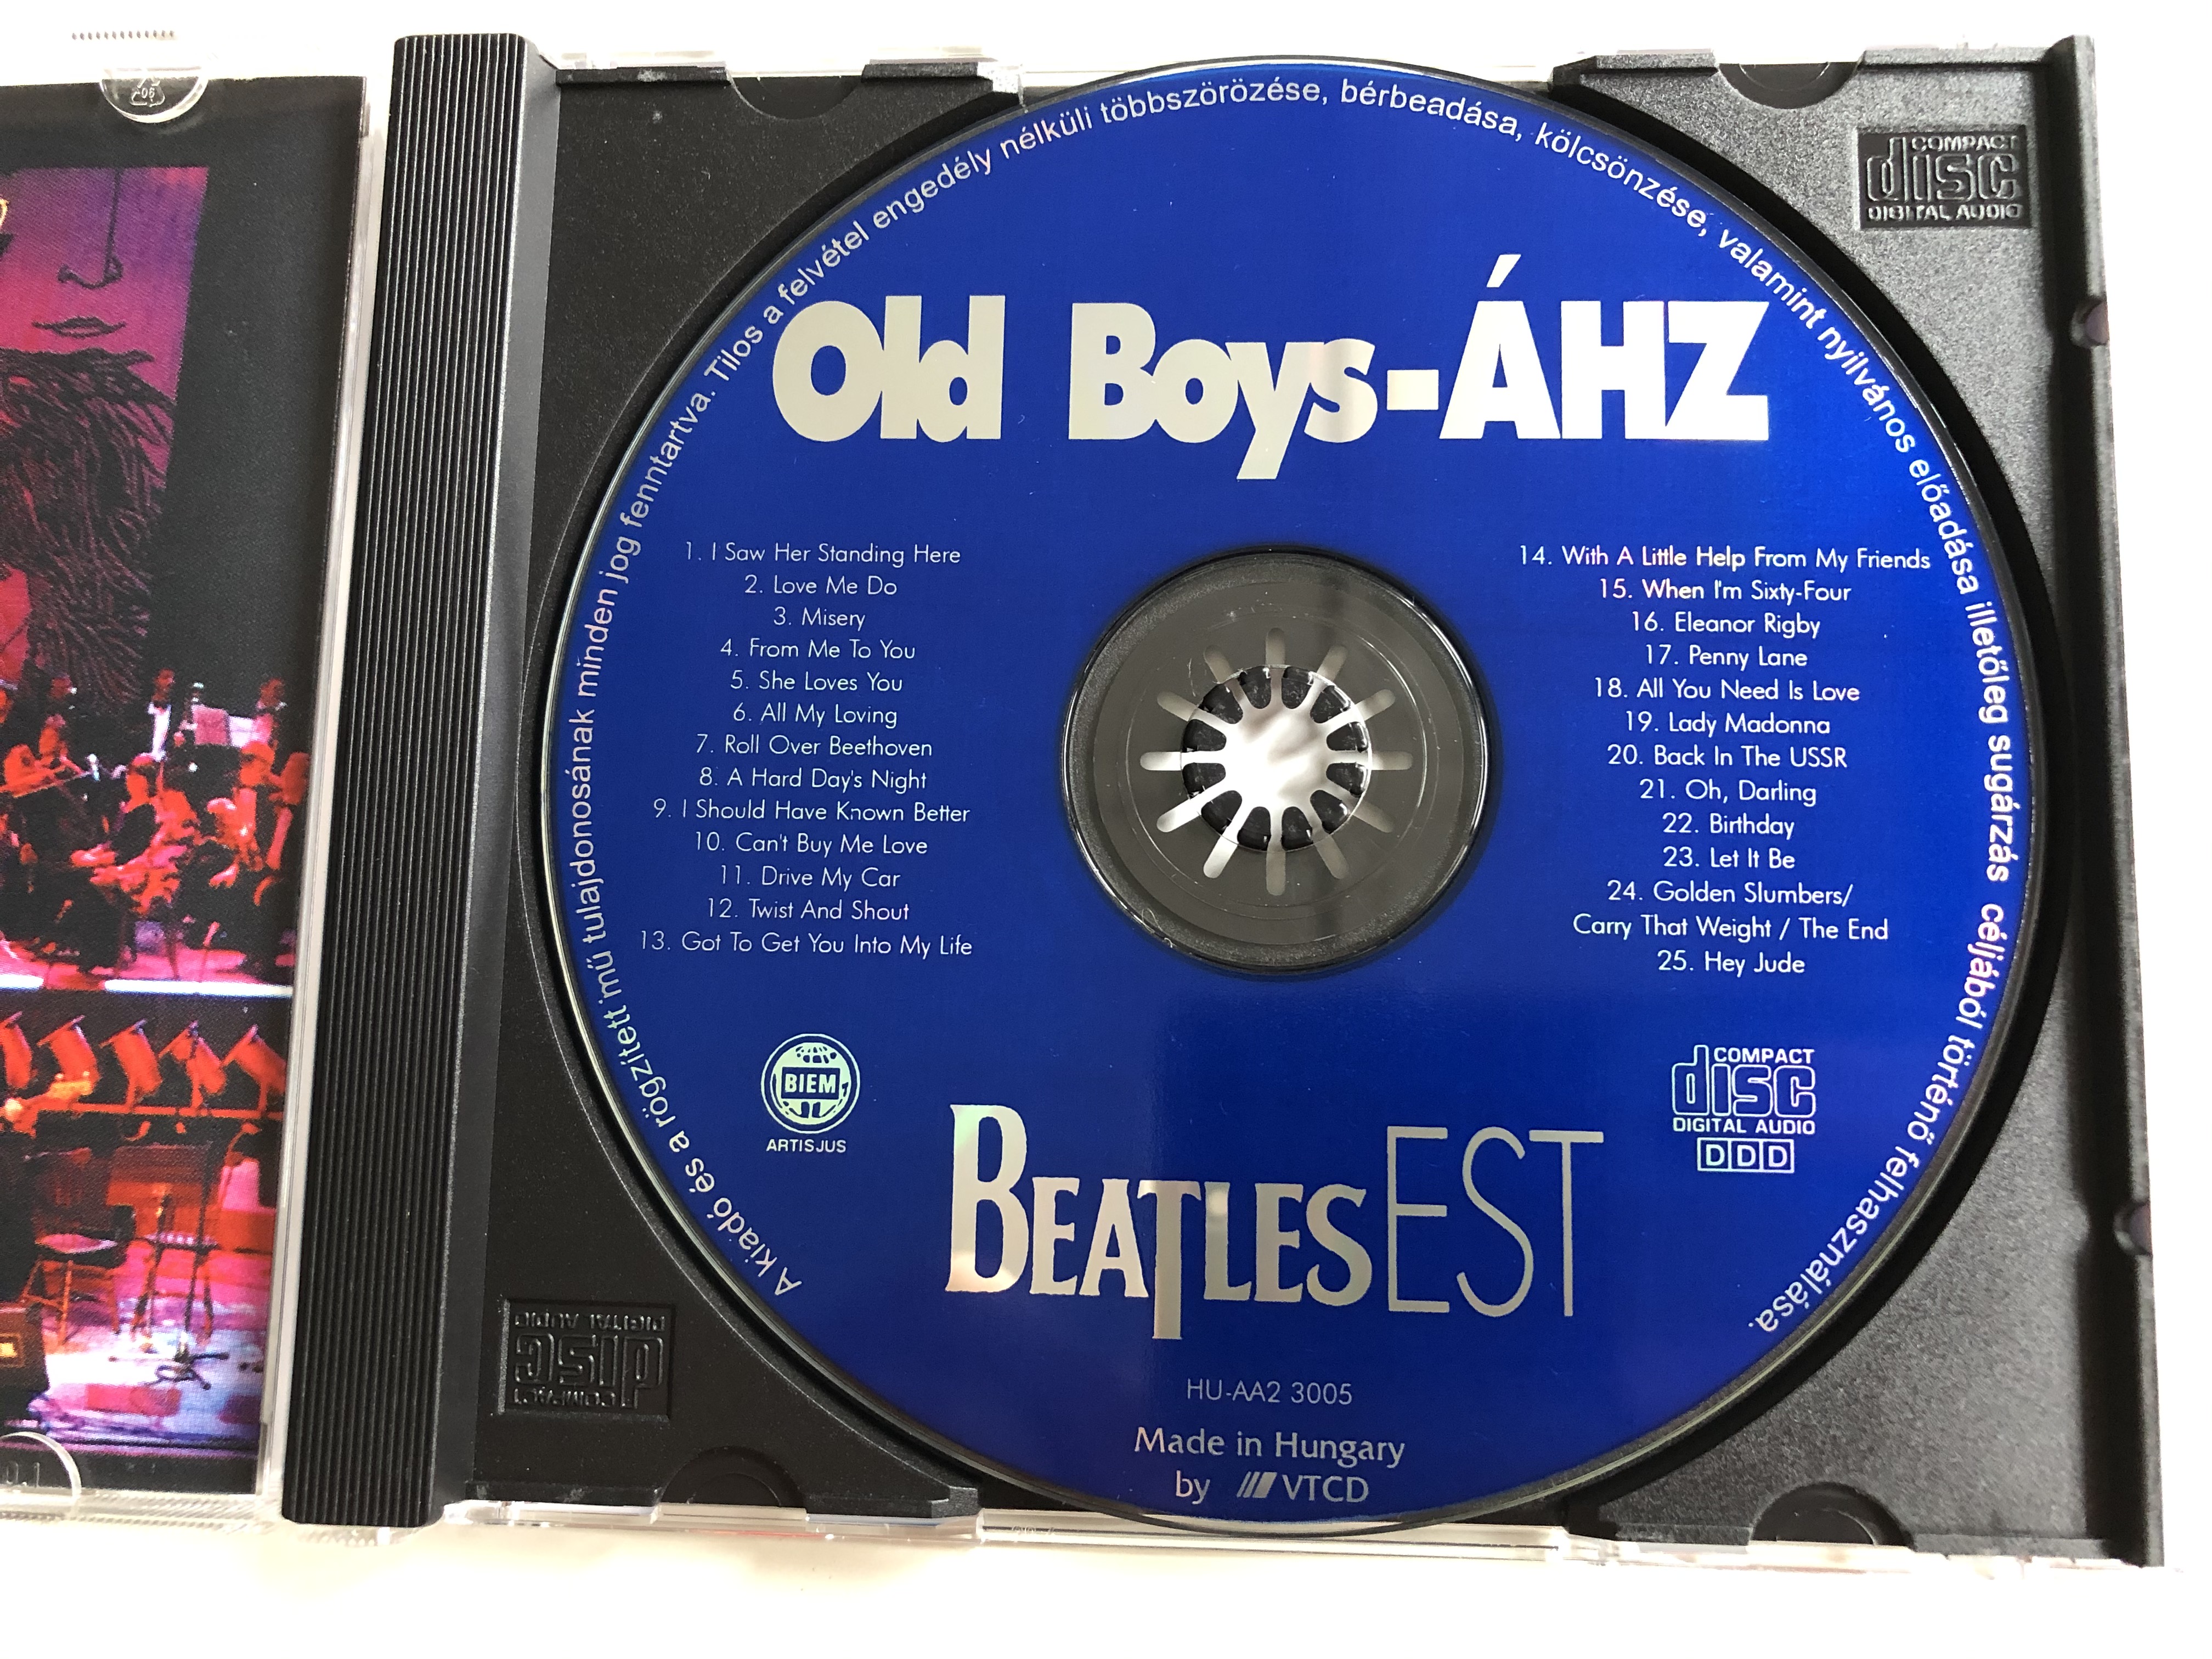 beatles-est-az-old-boys-es-a-magyar-allami-hangversenyzenekar-kozos-koncertje-1997.-marcius-31.-erkel-szinhaz-audio-cd-1997-cp-hu-aa2-3005-3-.jpg